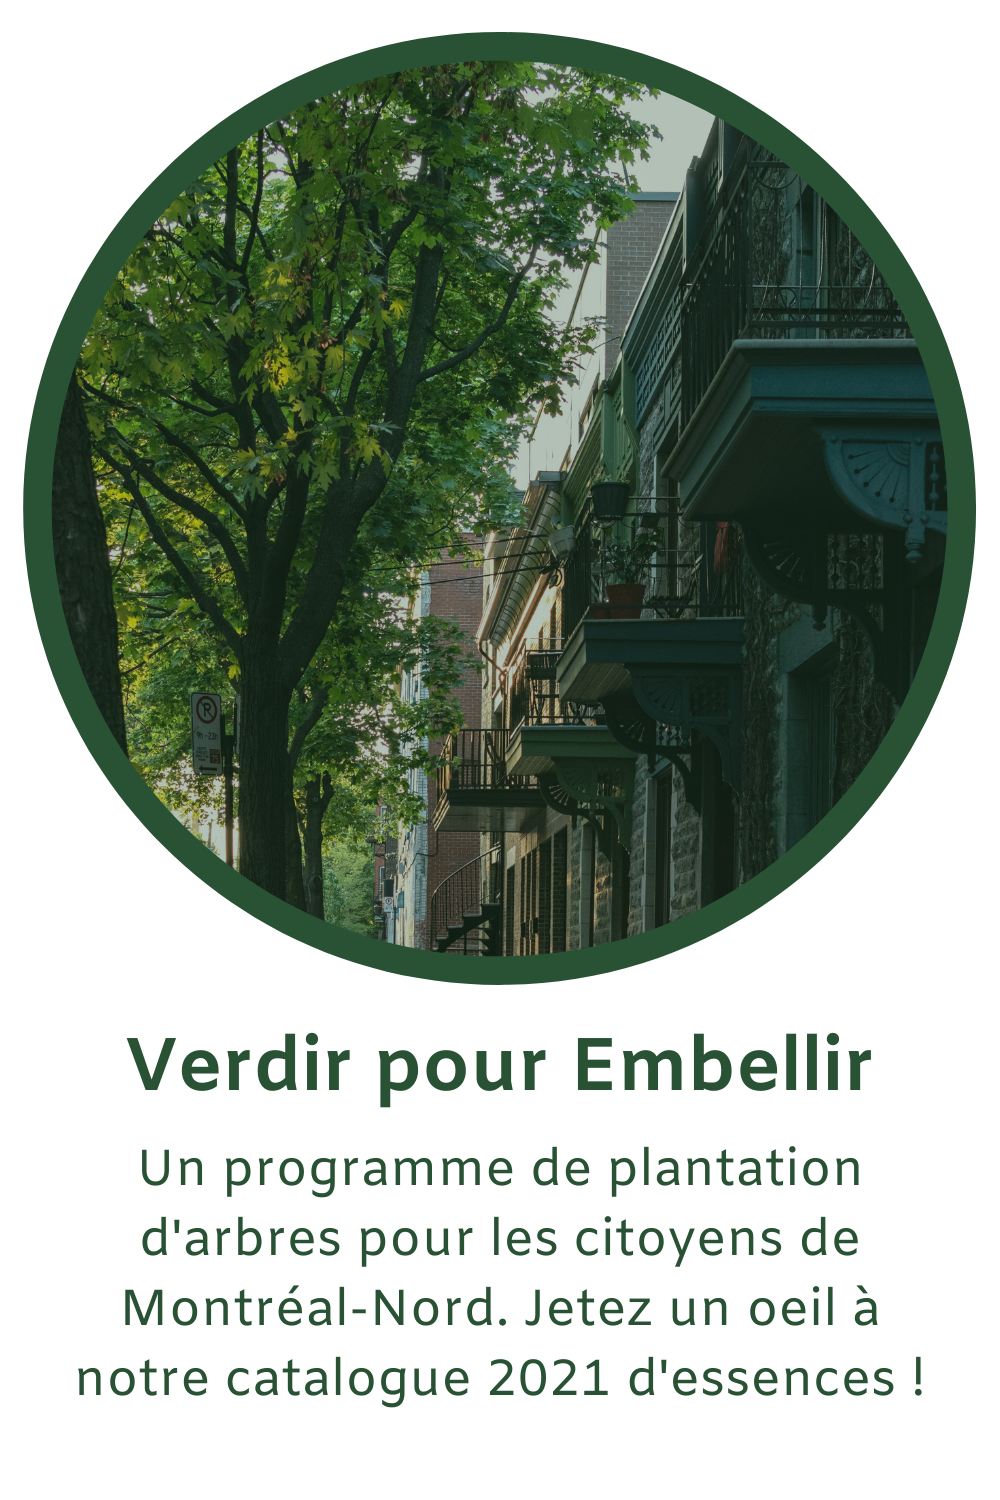 Un programme de plantation d'arbres pour améliorer le cadre de vie des citoyens de l'arrondissment et augmenter la canopée de Montréal-Nord."